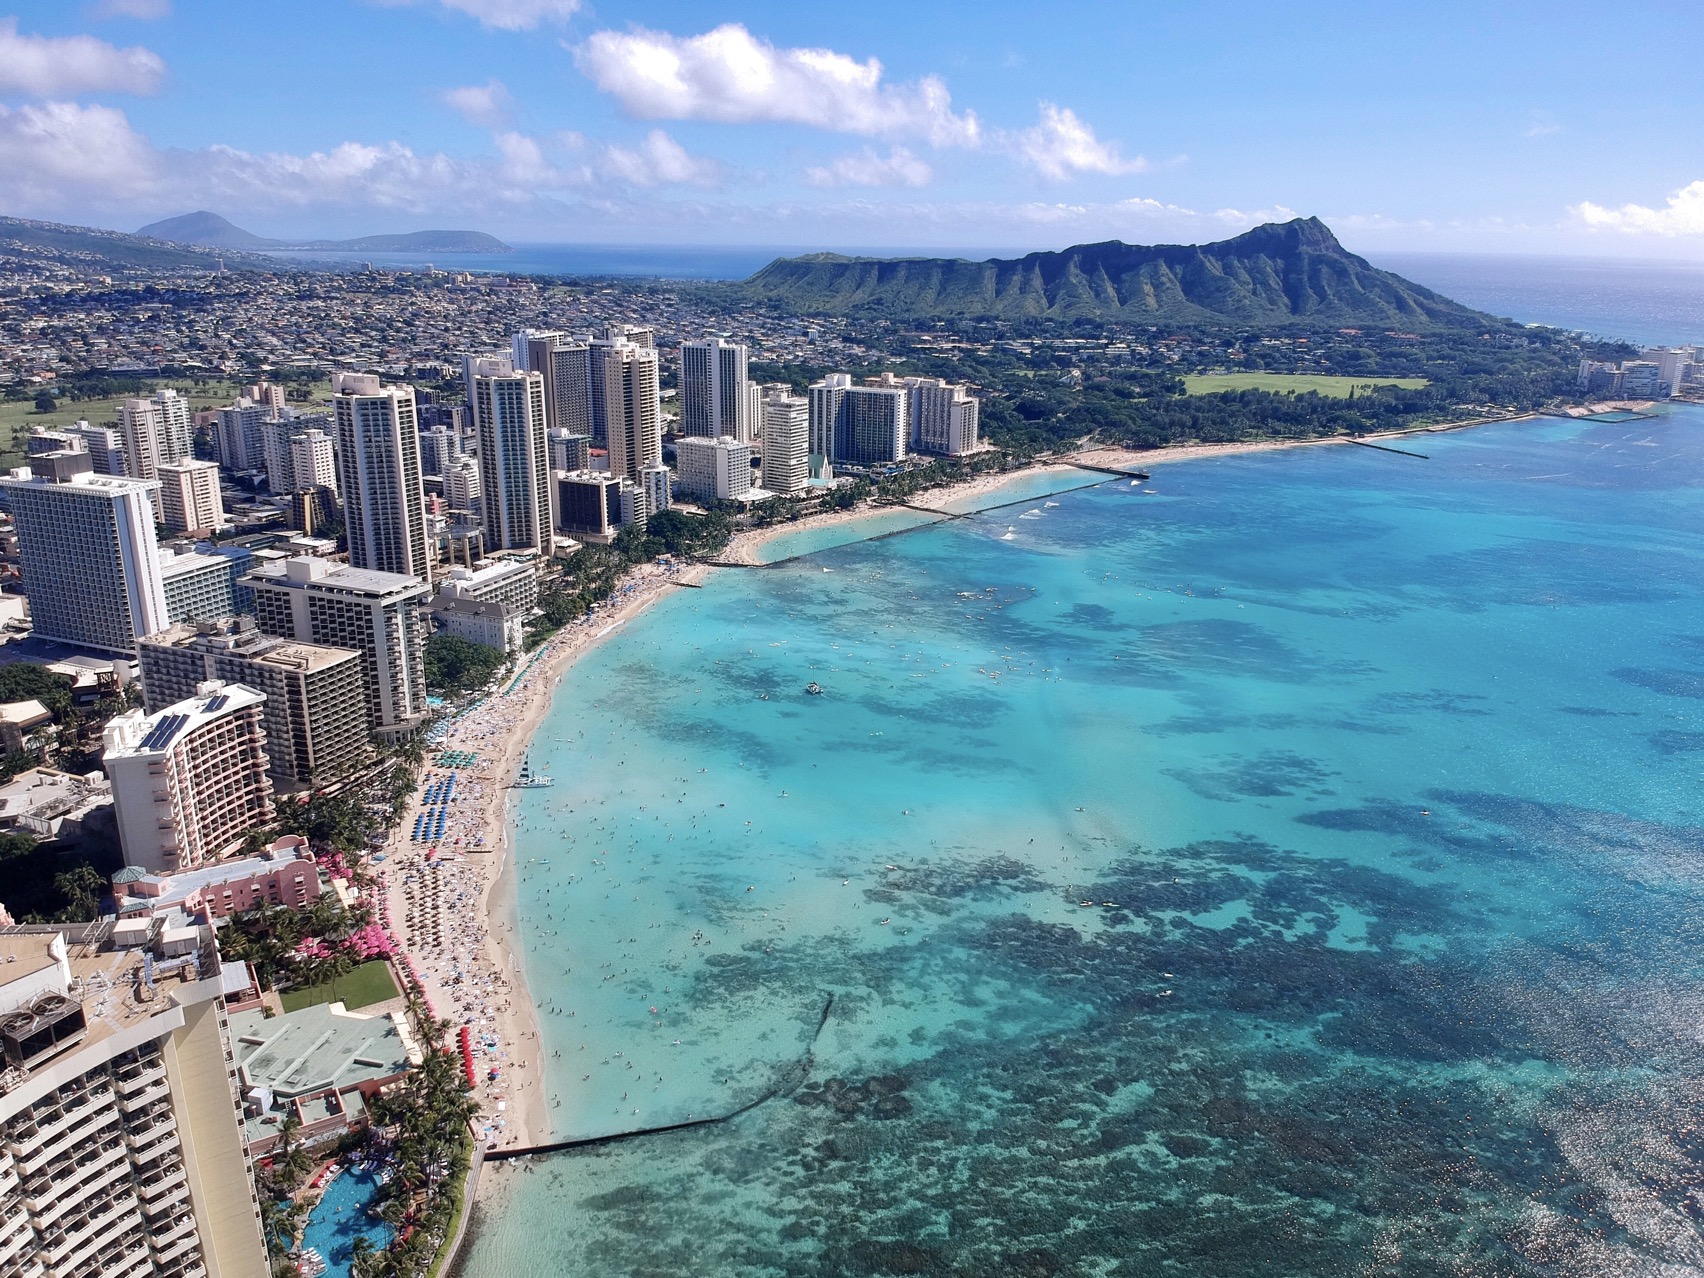 Waikiki Beach: An Iconic & Popular Beach of Hawaii